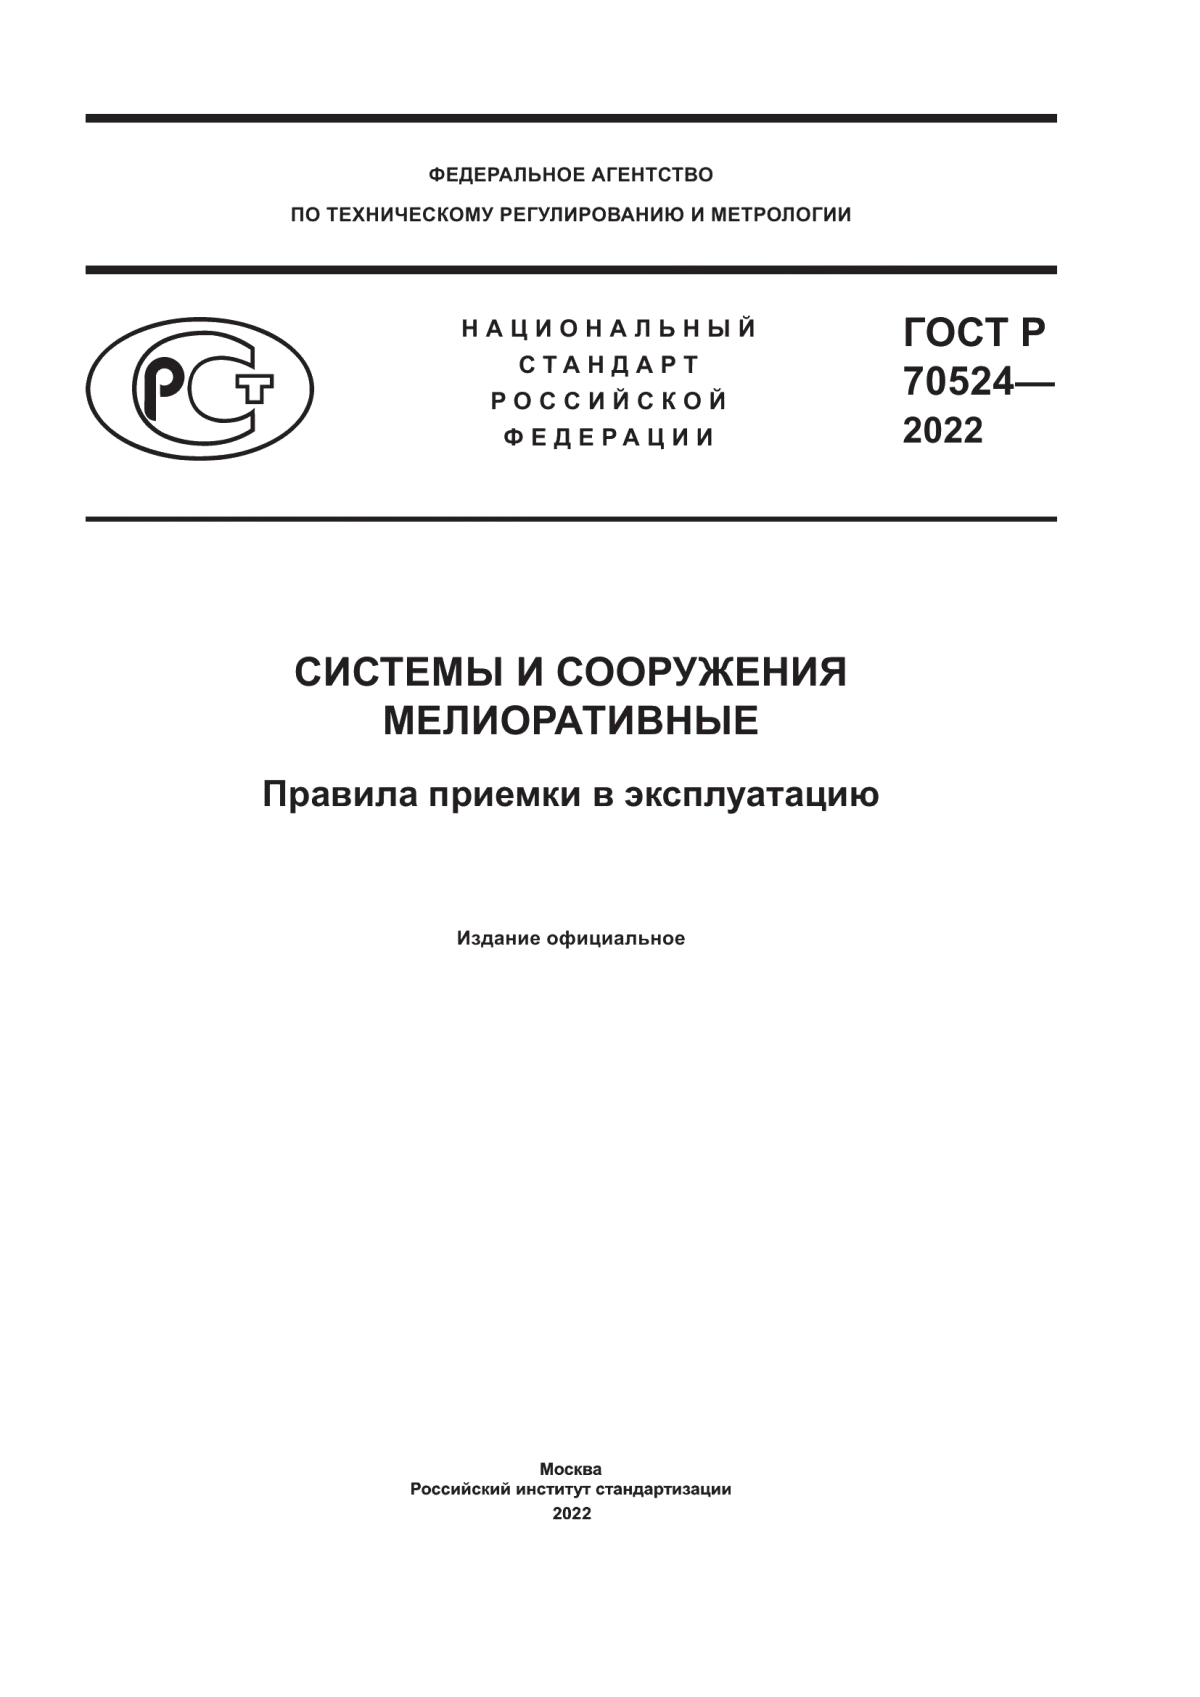 ГОСТ Р 70524-2022 Системы и сооружения мелиоративные. Правила приемки в эксплуатацию